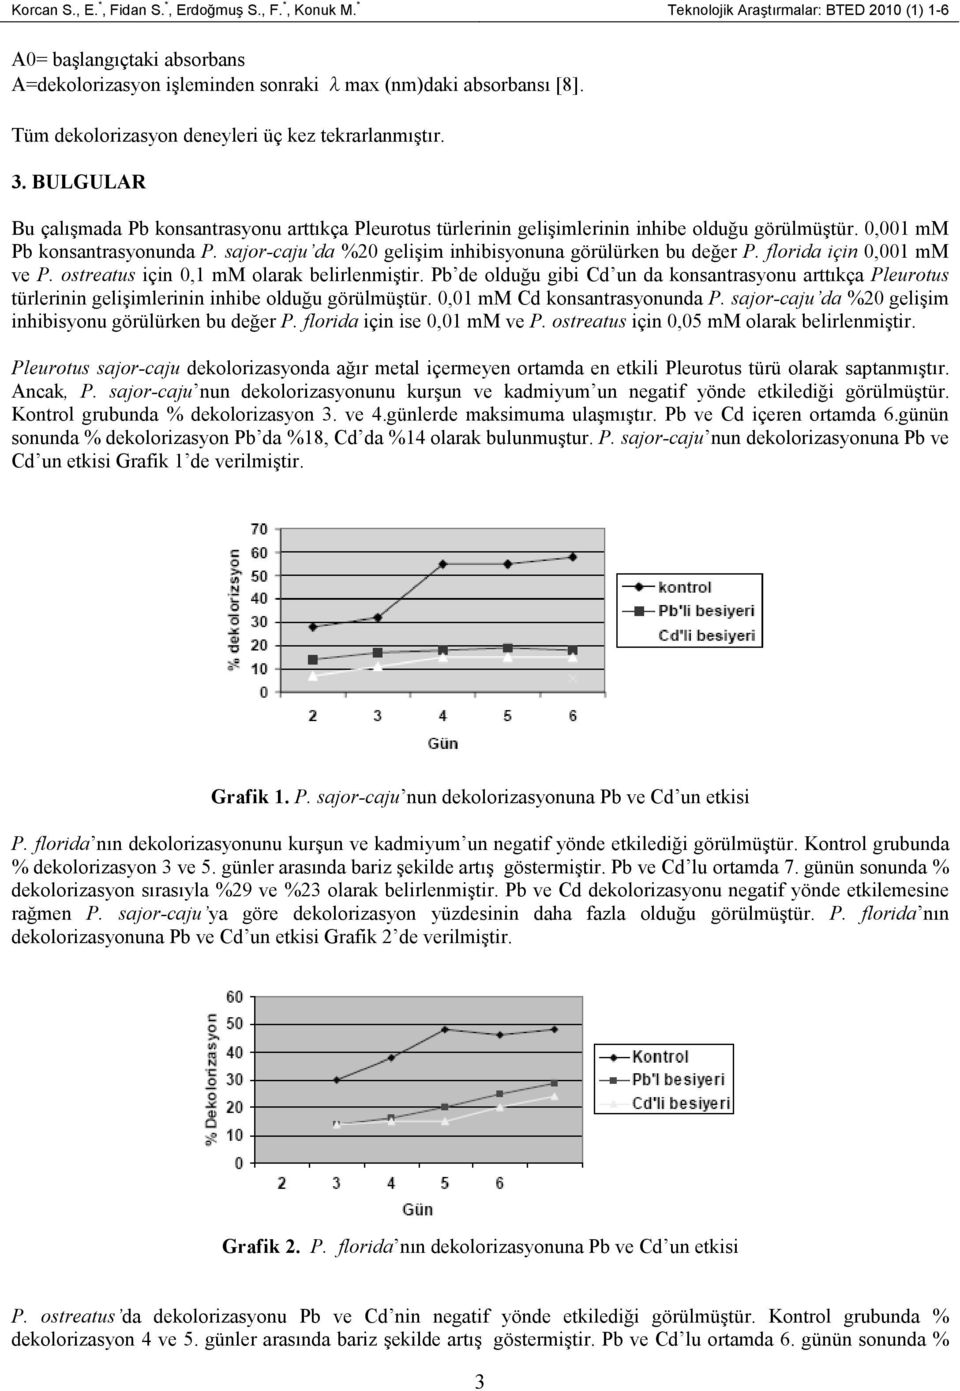 sajor-caju da %20 gelişim inhibisyonuna görülürken bu değer P. florida için 0,001 mm ve P. ostreatus için 0,1 mm olarak belirlenmiştir.